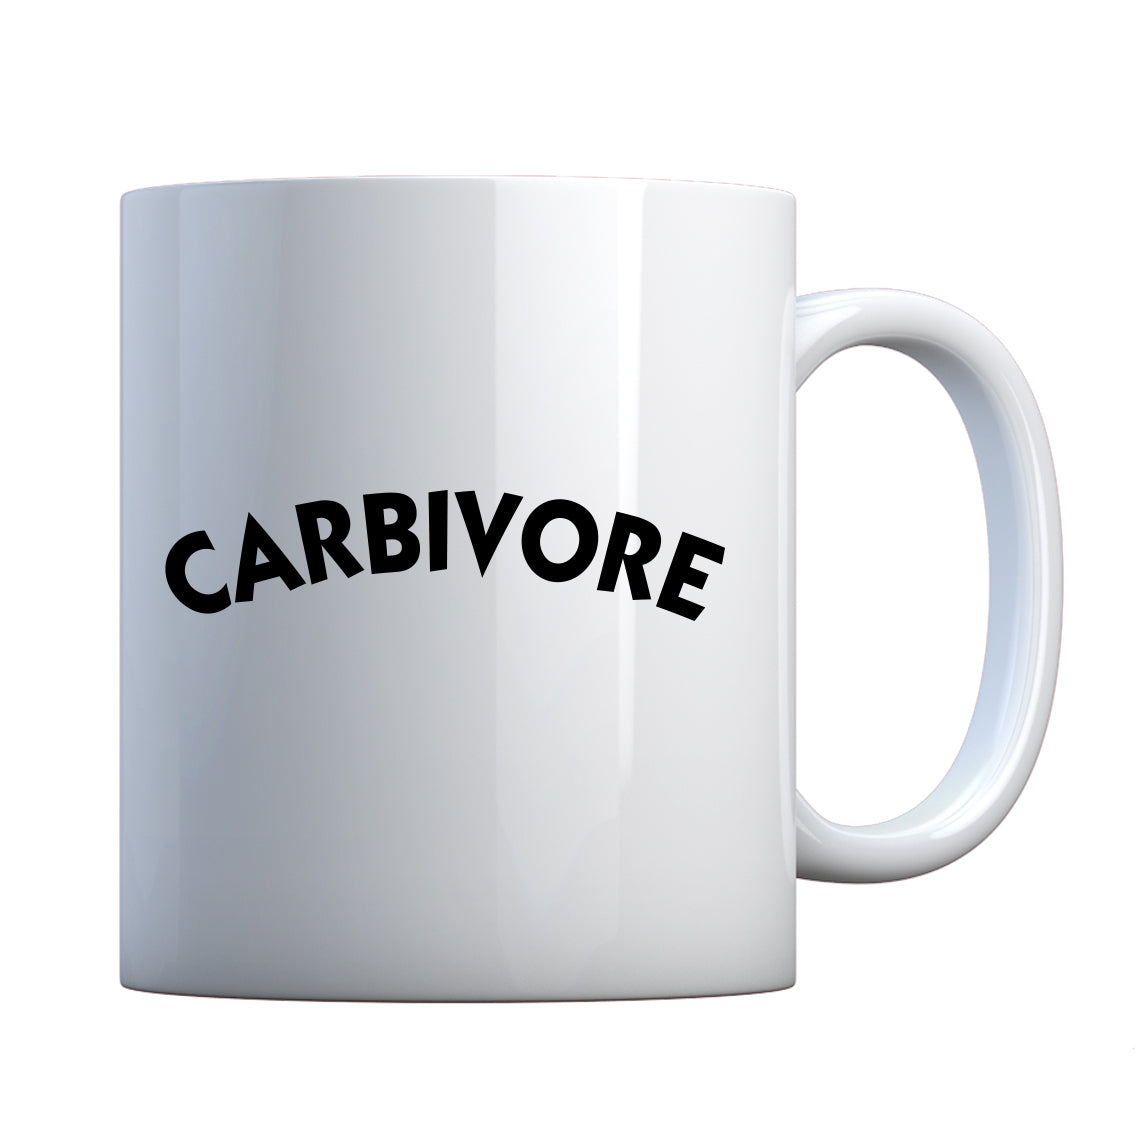 Mug Carbivore Ceramic Gift Mug